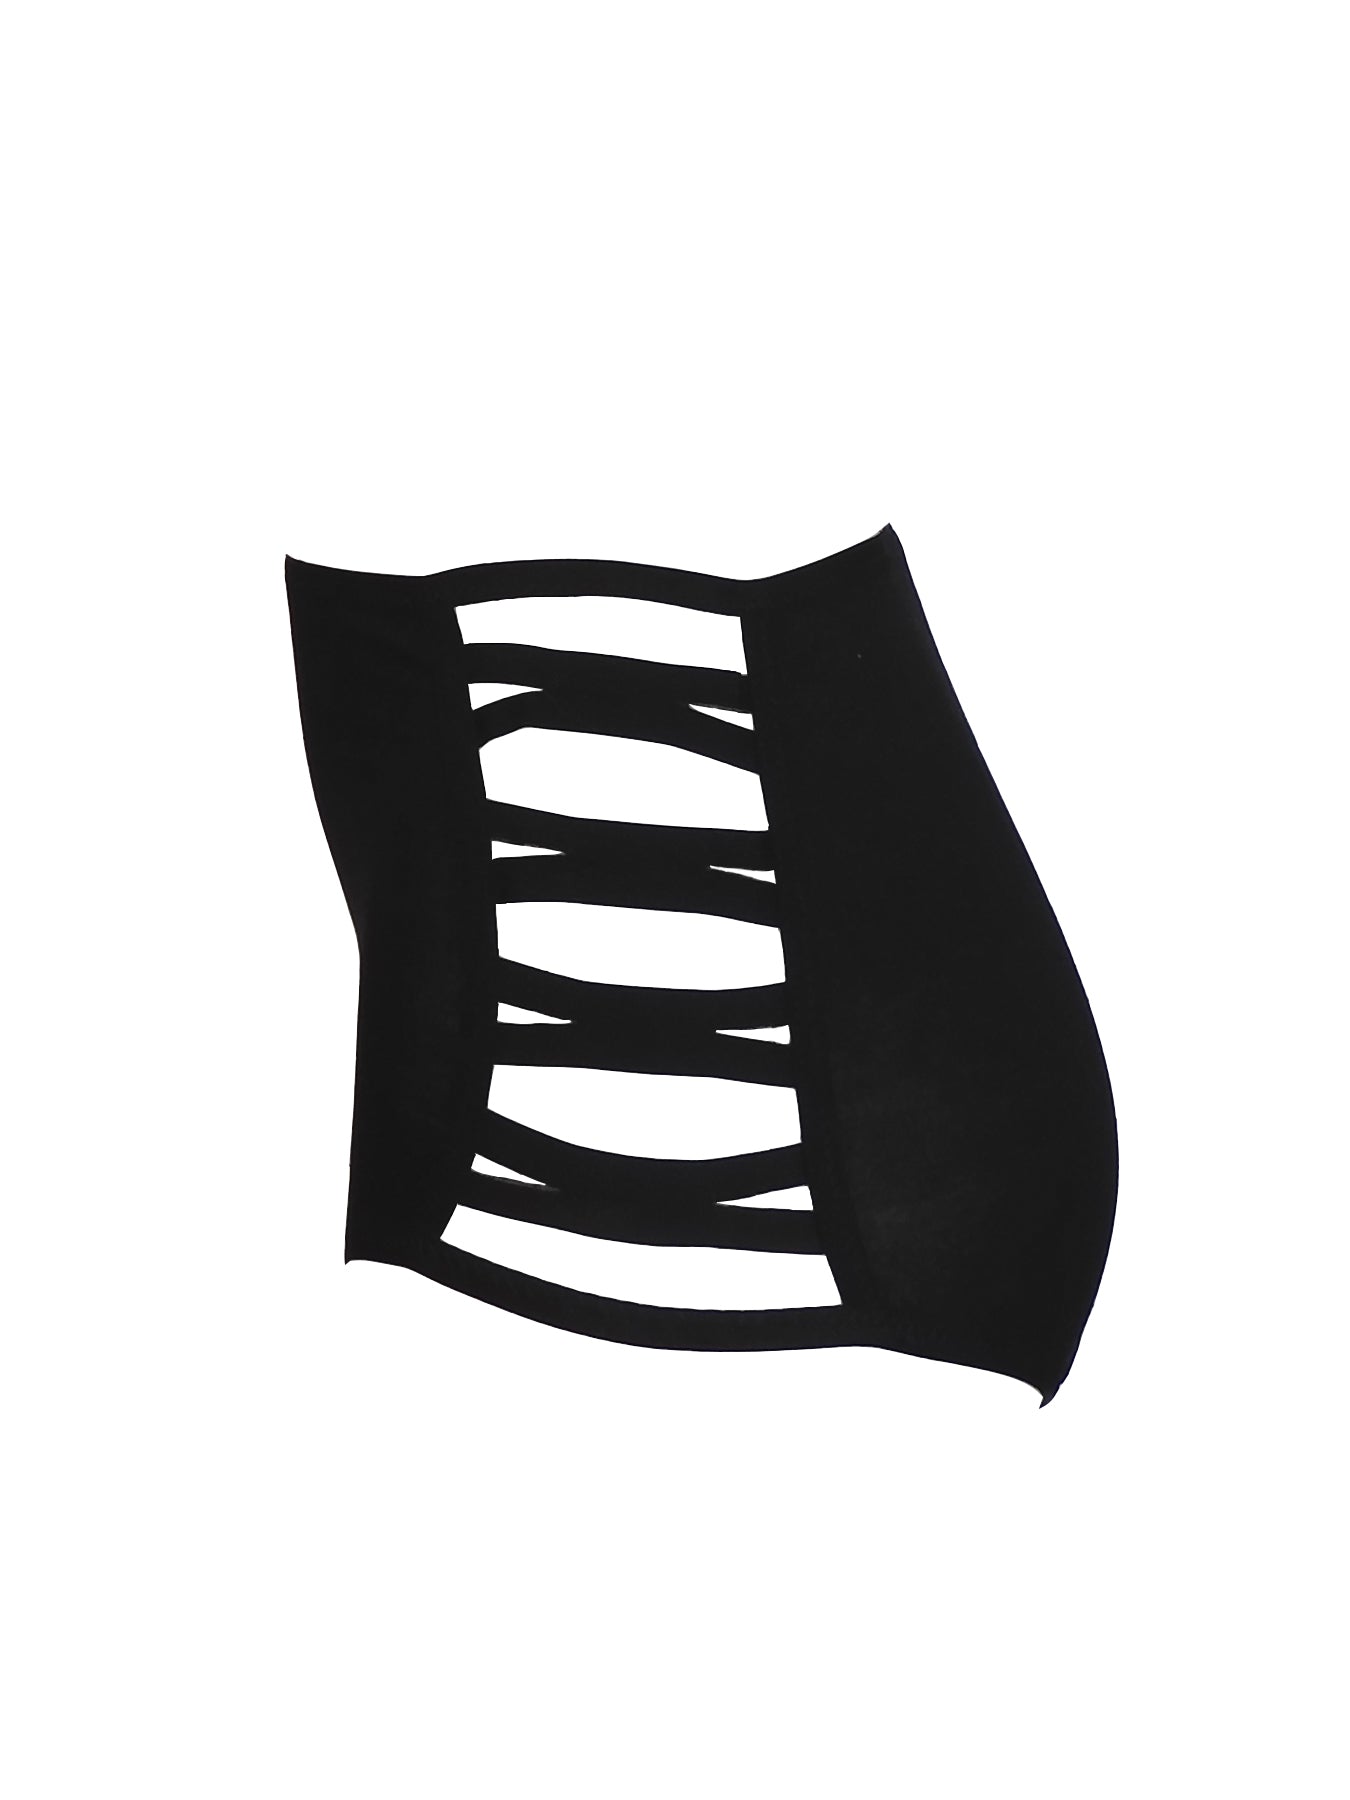 Schwarzer high waist Taillen-Slip seitlich geöffnet seitliche Ansicht| fishbelly handmade Lingerie